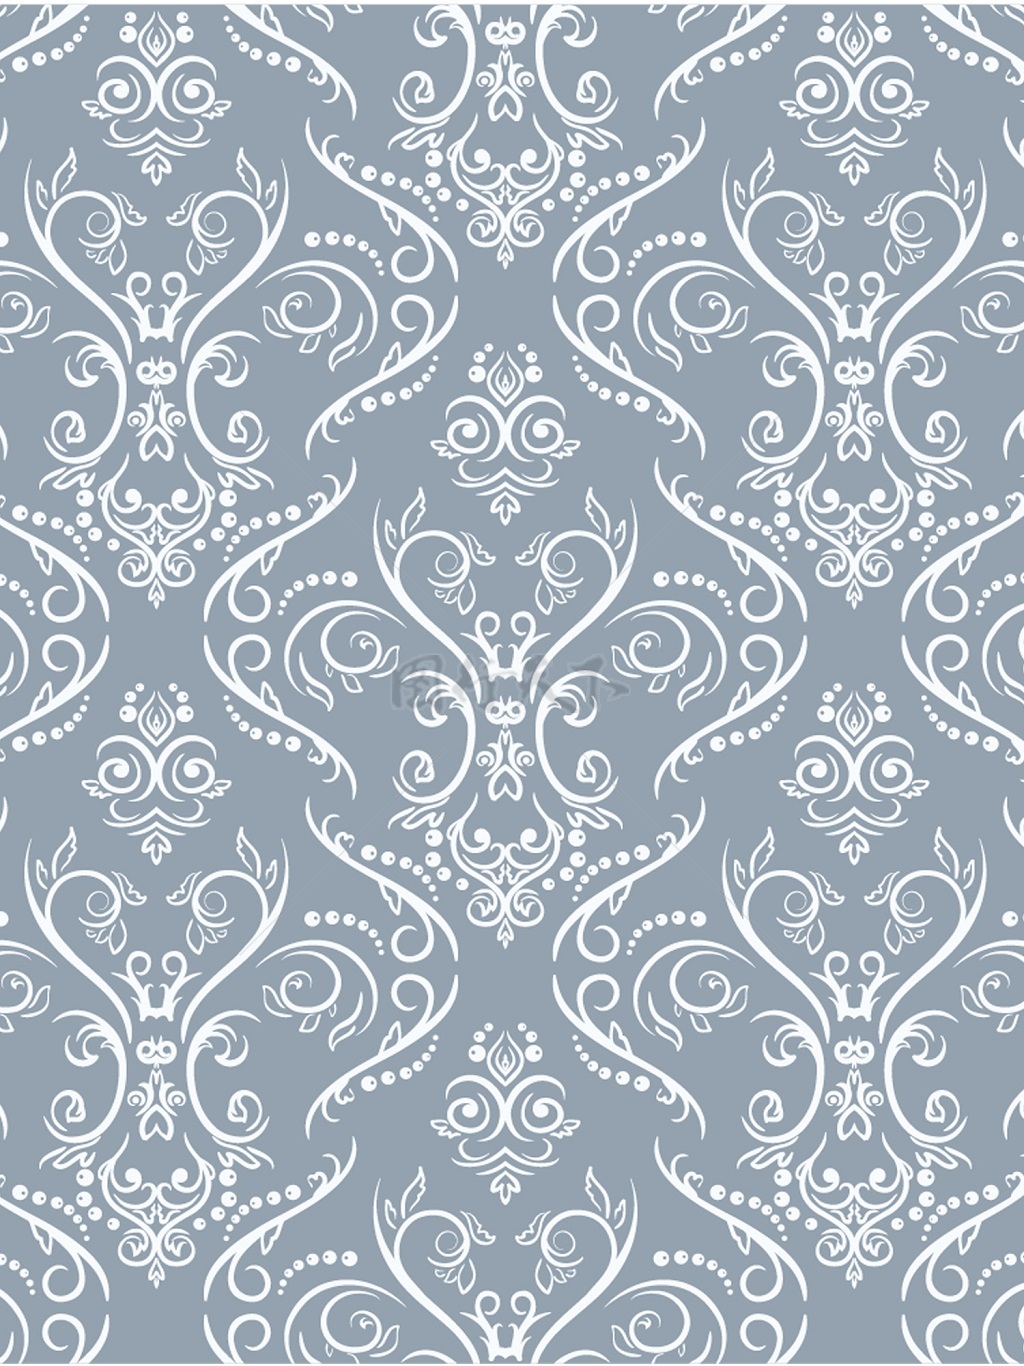 传统 欧式俄式花卉底图底纹  图案背景贴图  灰底白纹灵纹